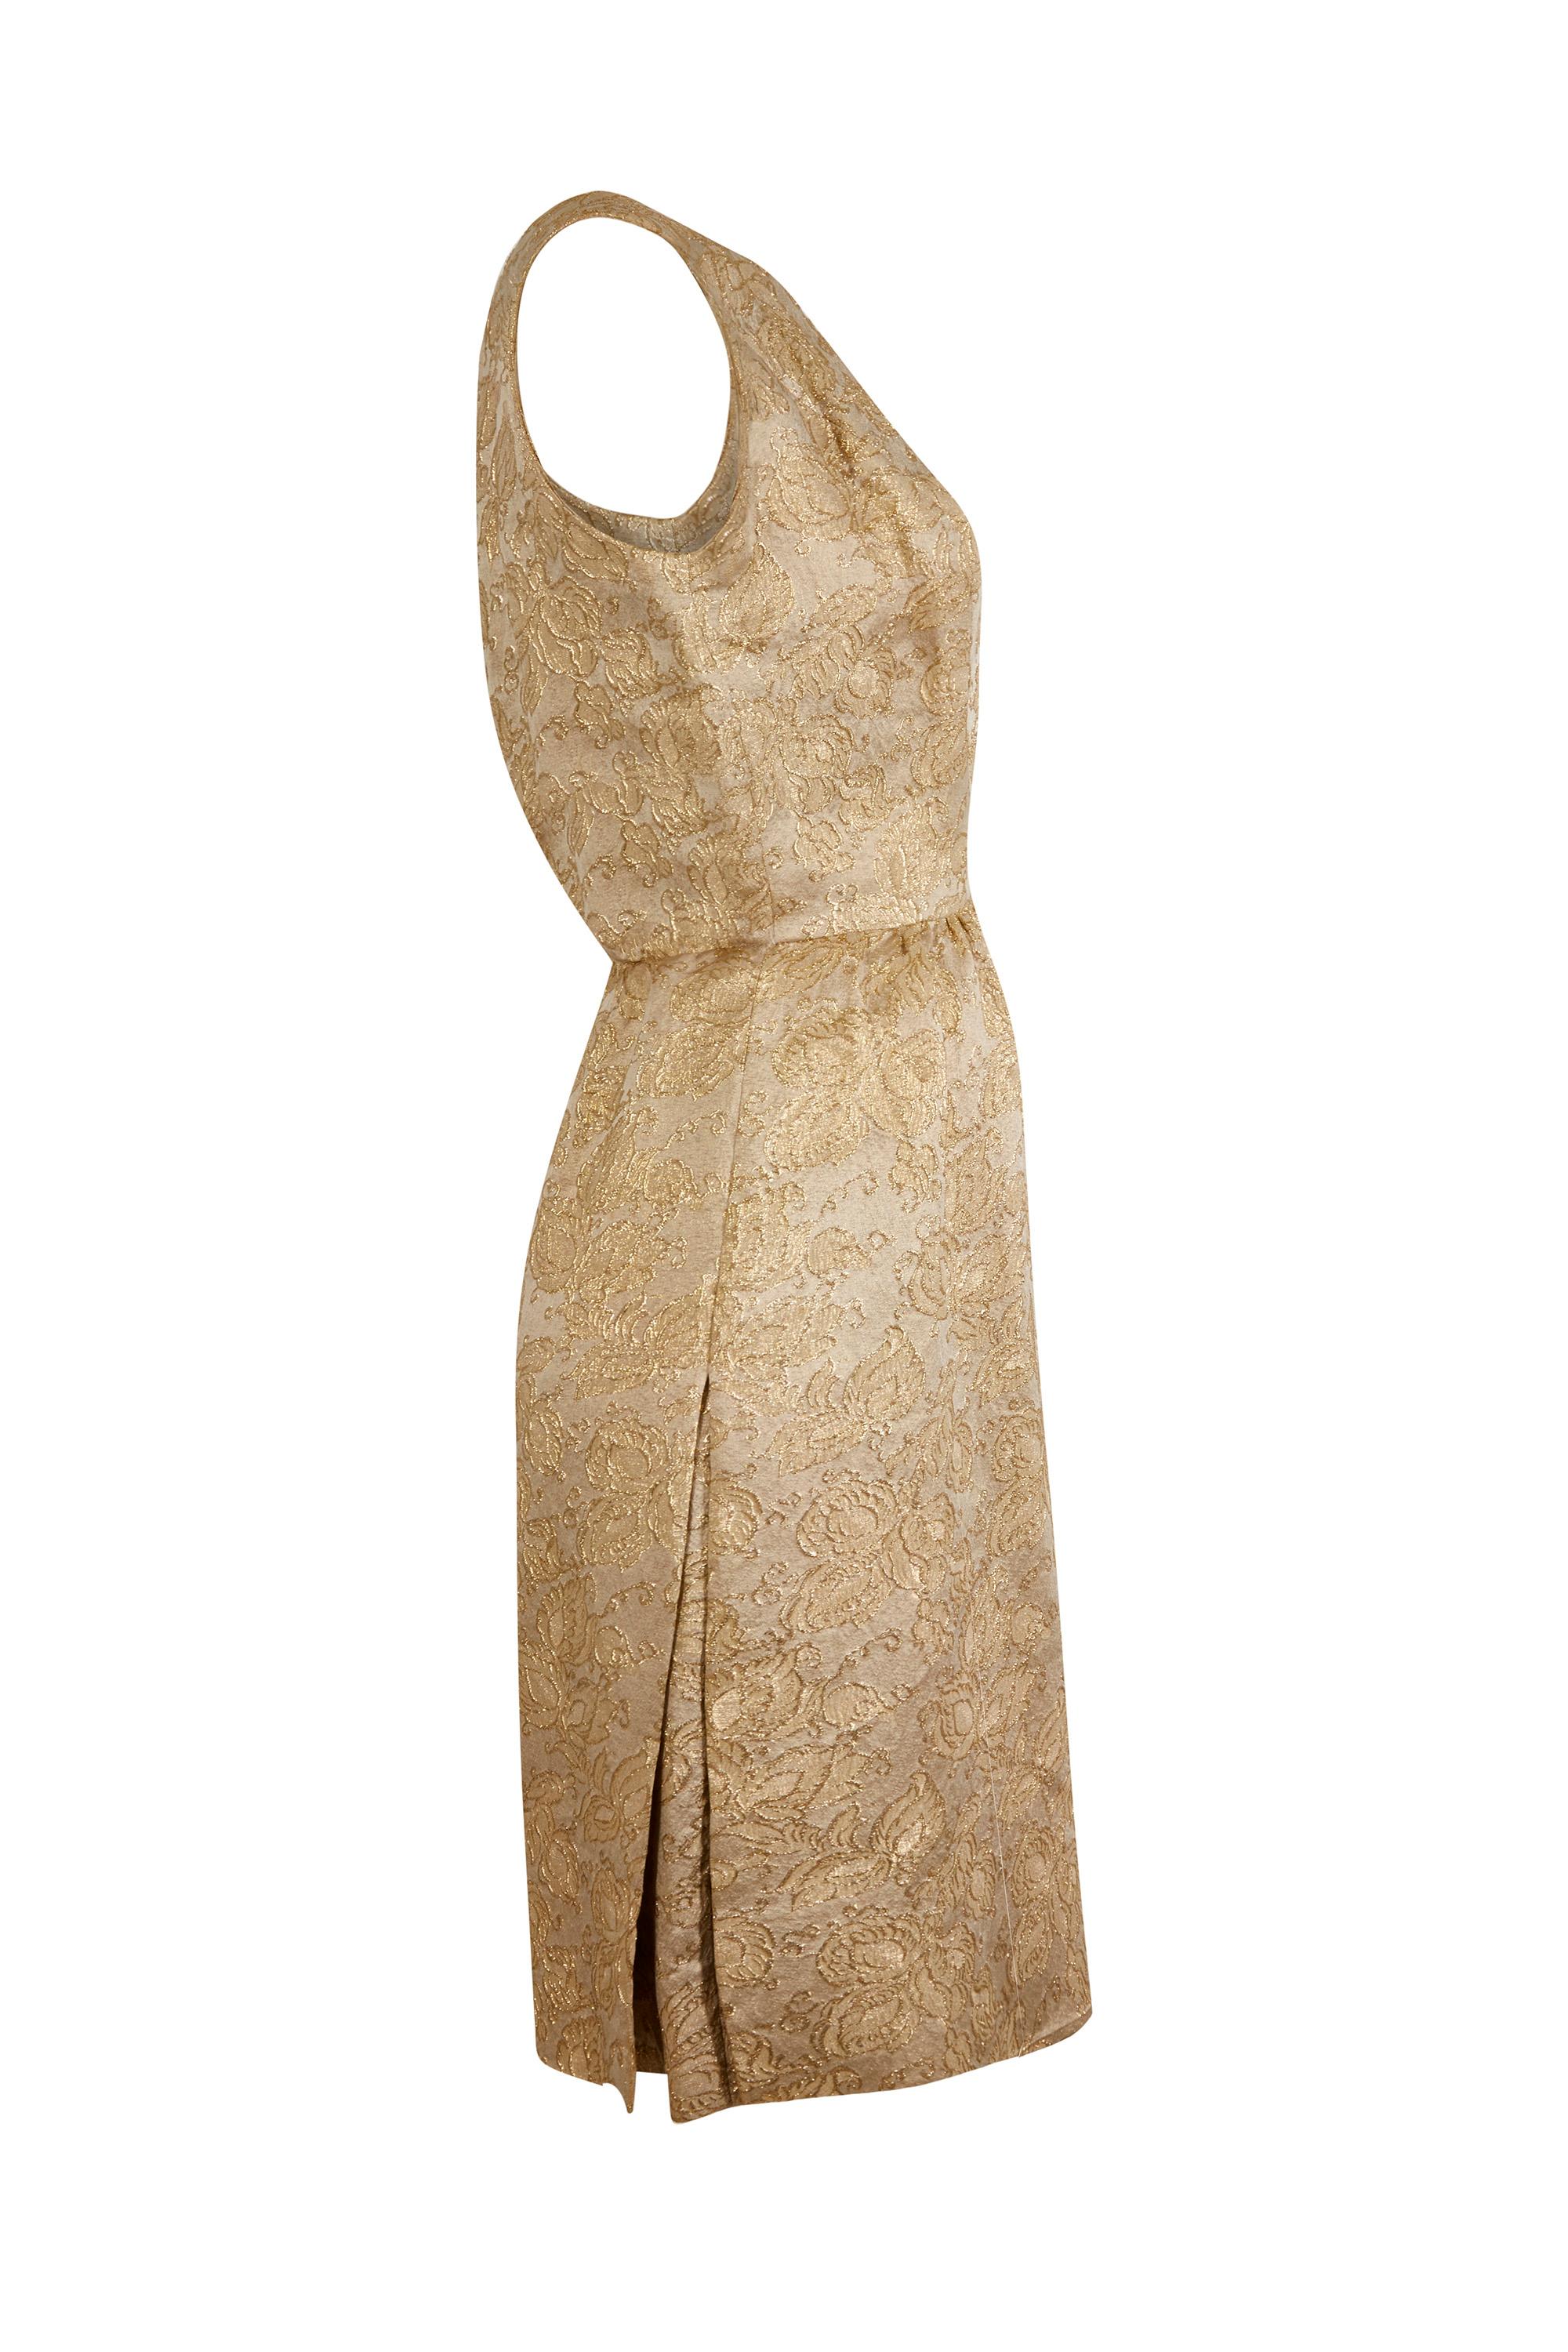 Dieses schillernde Cocktailkleid aus goldenem Brokat aus den 1950er-Jahren ist Demi-Couture des Pariser Designers Jacques Heim. Es ist schlicht und glamourös zugleich und besticht durch schöne Konstruktionsdetails. Der goldene, geblümte Brokatstoff